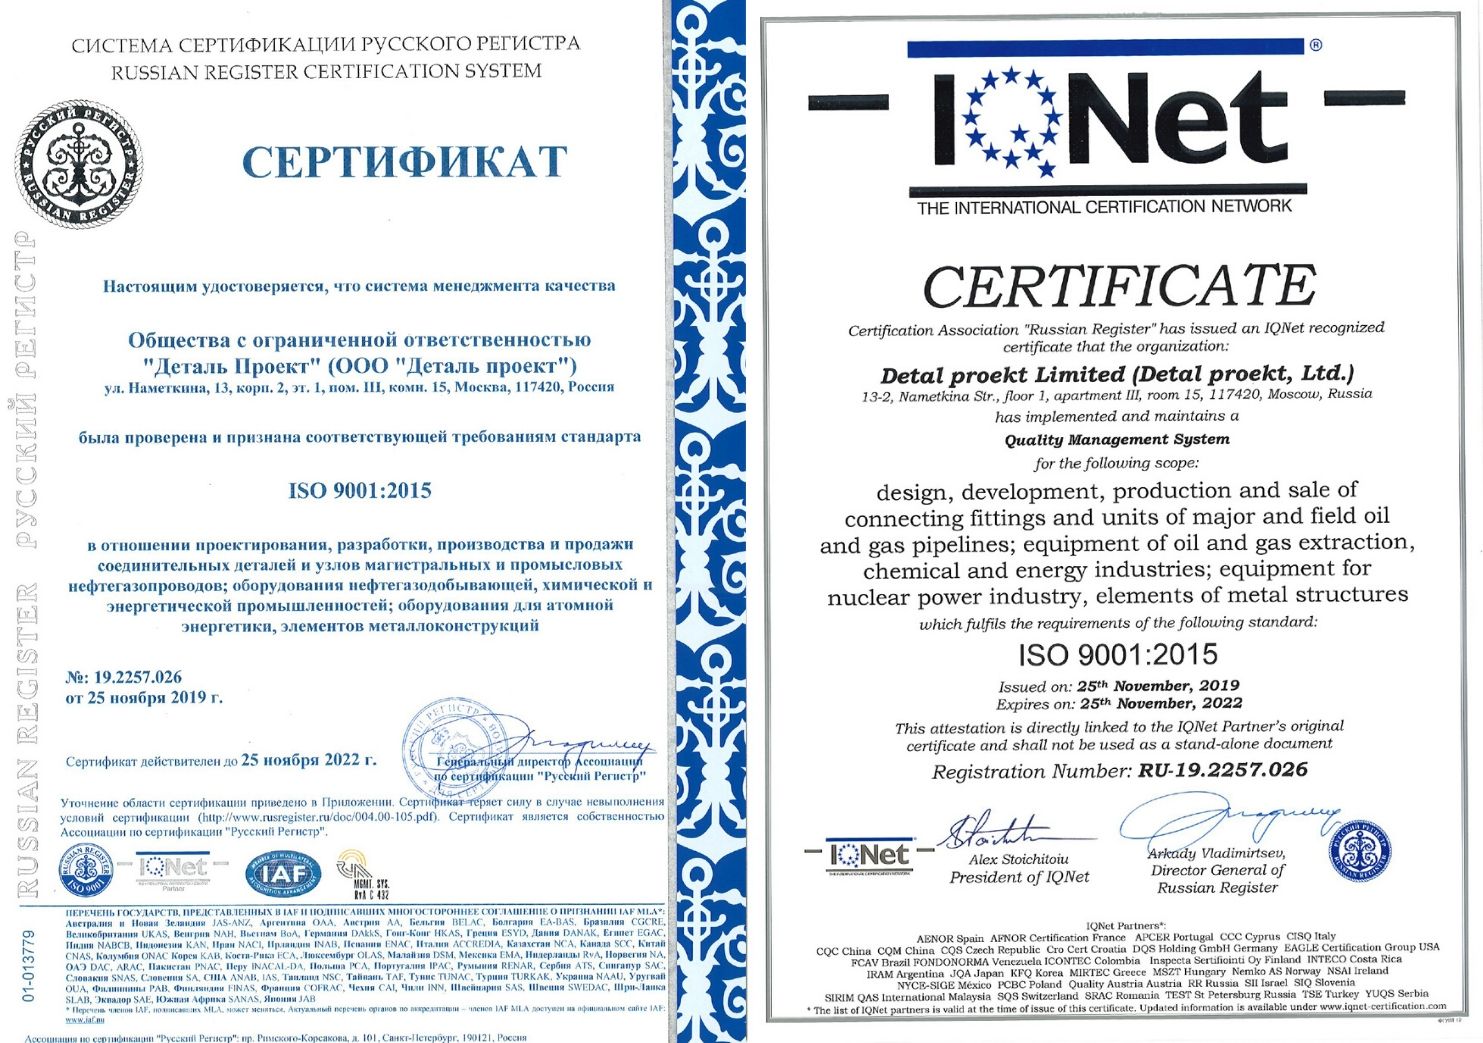 Стандарт качества: важность сертификации ИСО 9001 для бизнеса